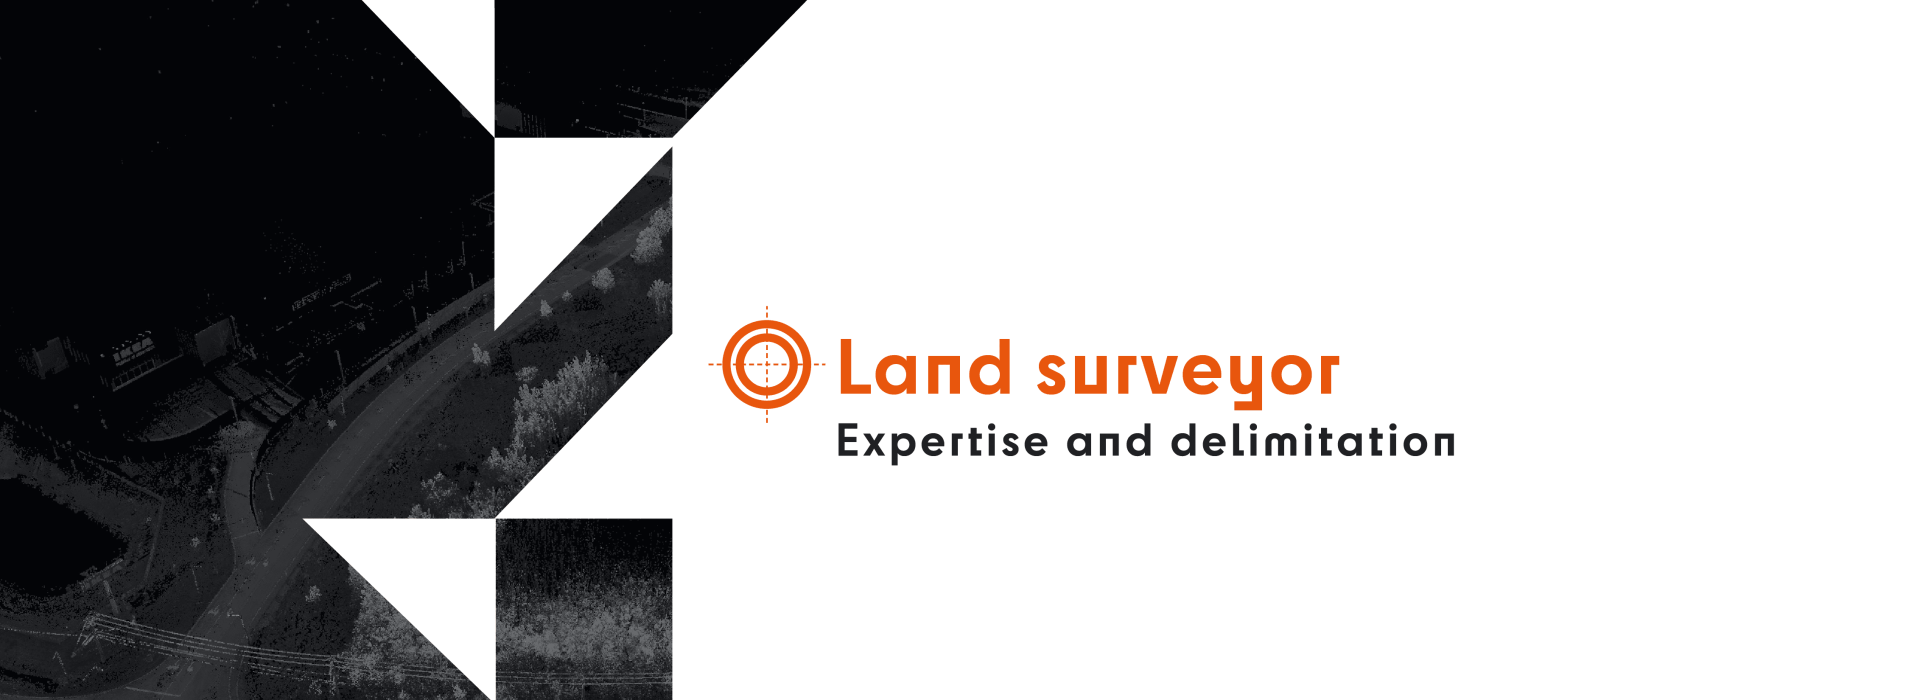 ANGLAIS_WebBanner_Land surveyor - Expertise delimitation